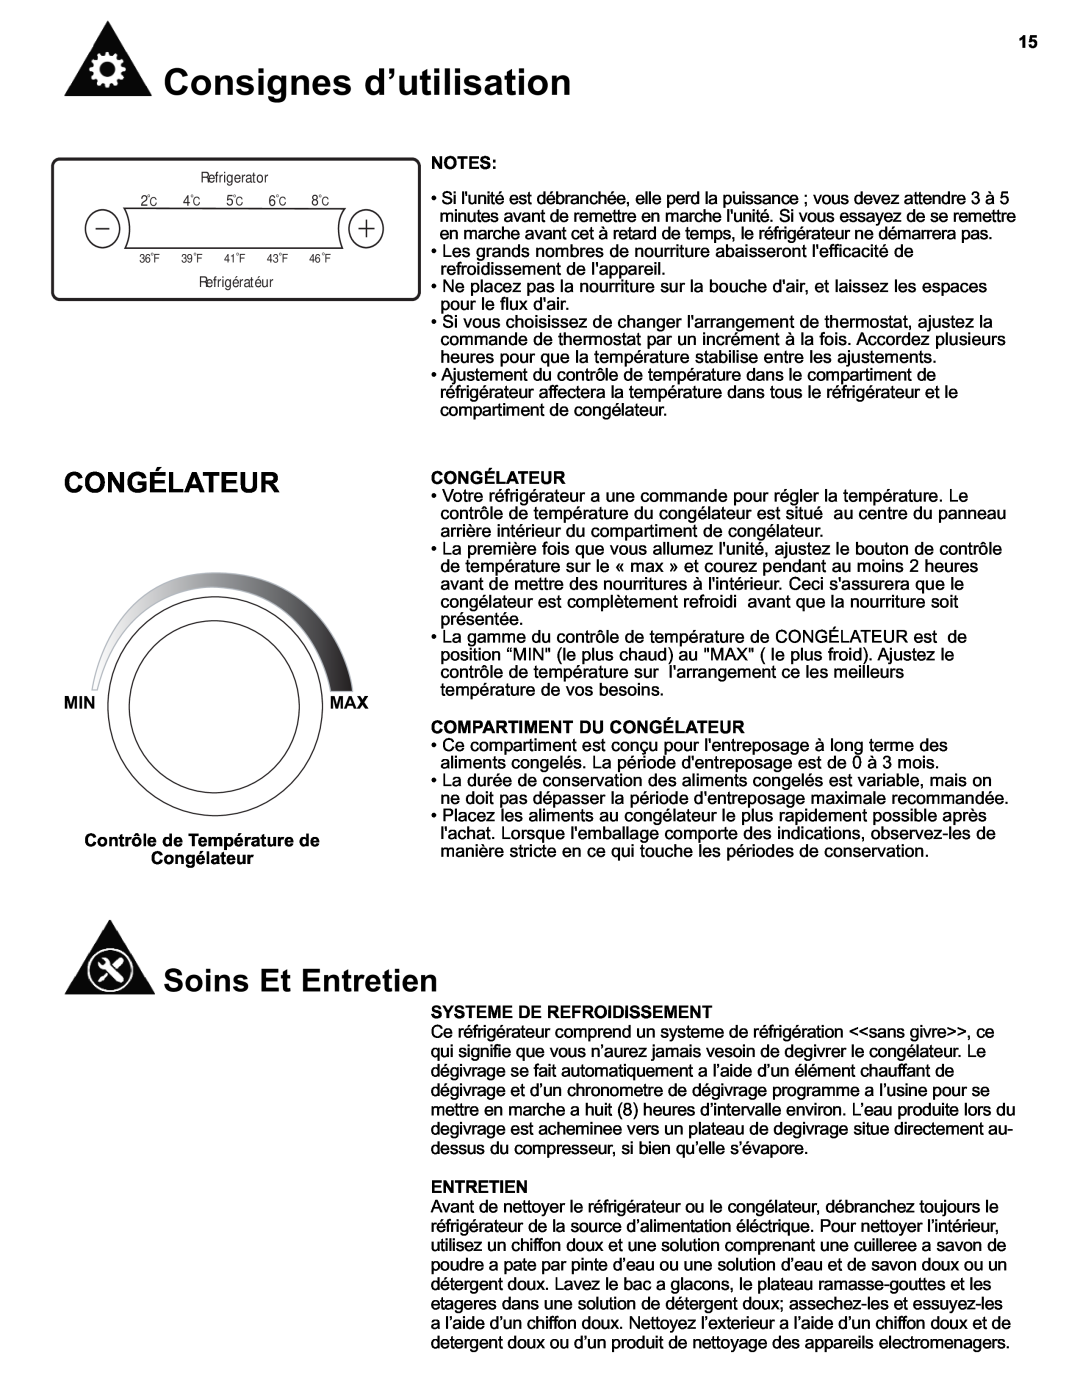 Danby DFF280WDB manual Soins Et Entretien, MINMAX Contrôle de Température de Congélateur, Compartiment Du Congélateur 